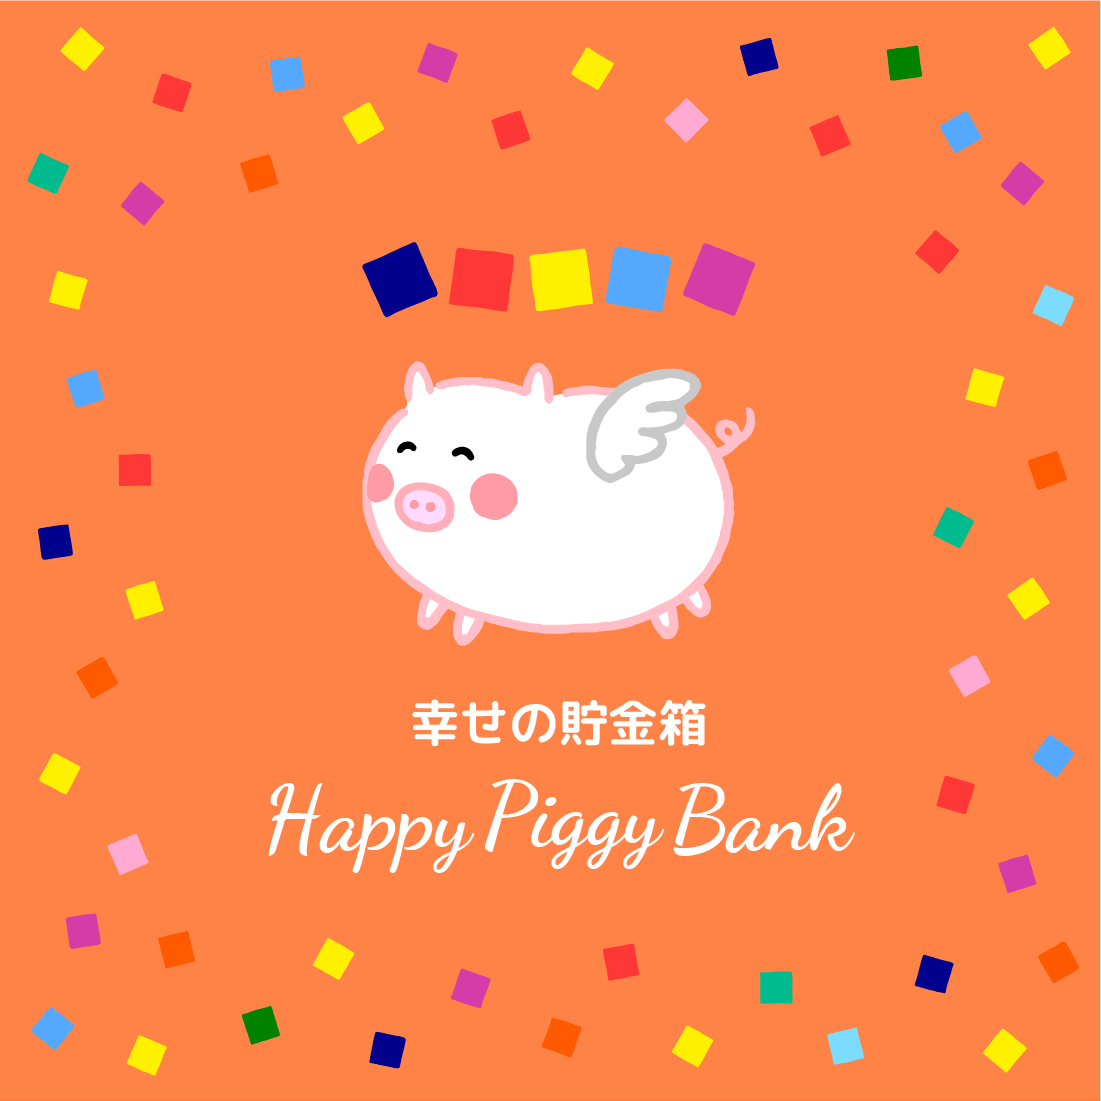 幸せの貯金箱 Happy Piggy Bank